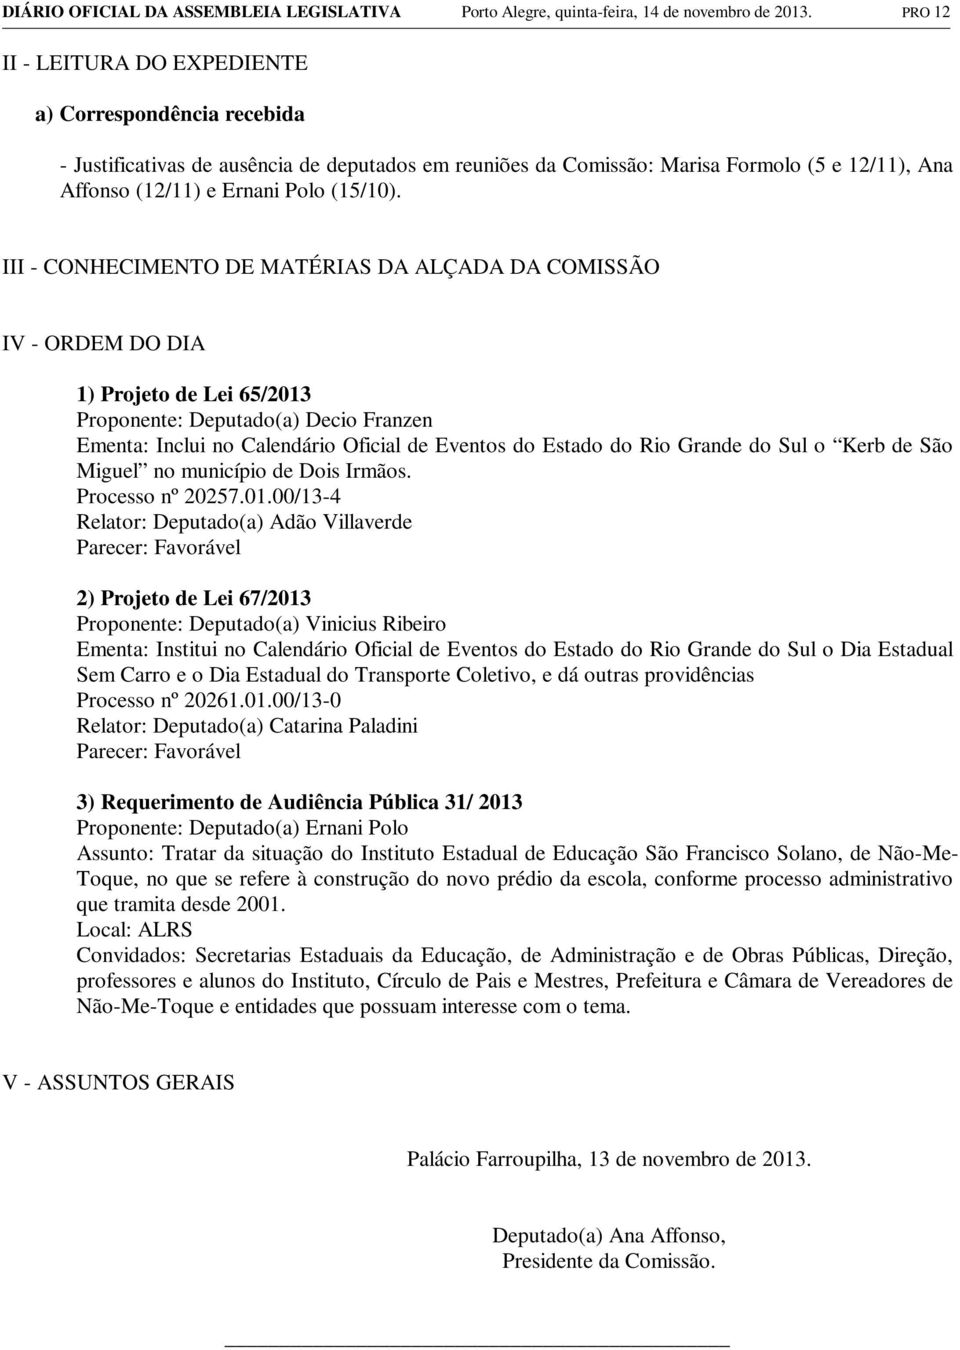 III - CONHECIMENTO DE MATÉRIAS DA ALÇADA DA COMISSÃO IV - ORDEM DO DIA 1) Projeto de Lei 65/2013 Proponente: Deputado(a) Decio Franzen Ementa: Inclui no Calendário Oficial de Eventos do Estado do Rio